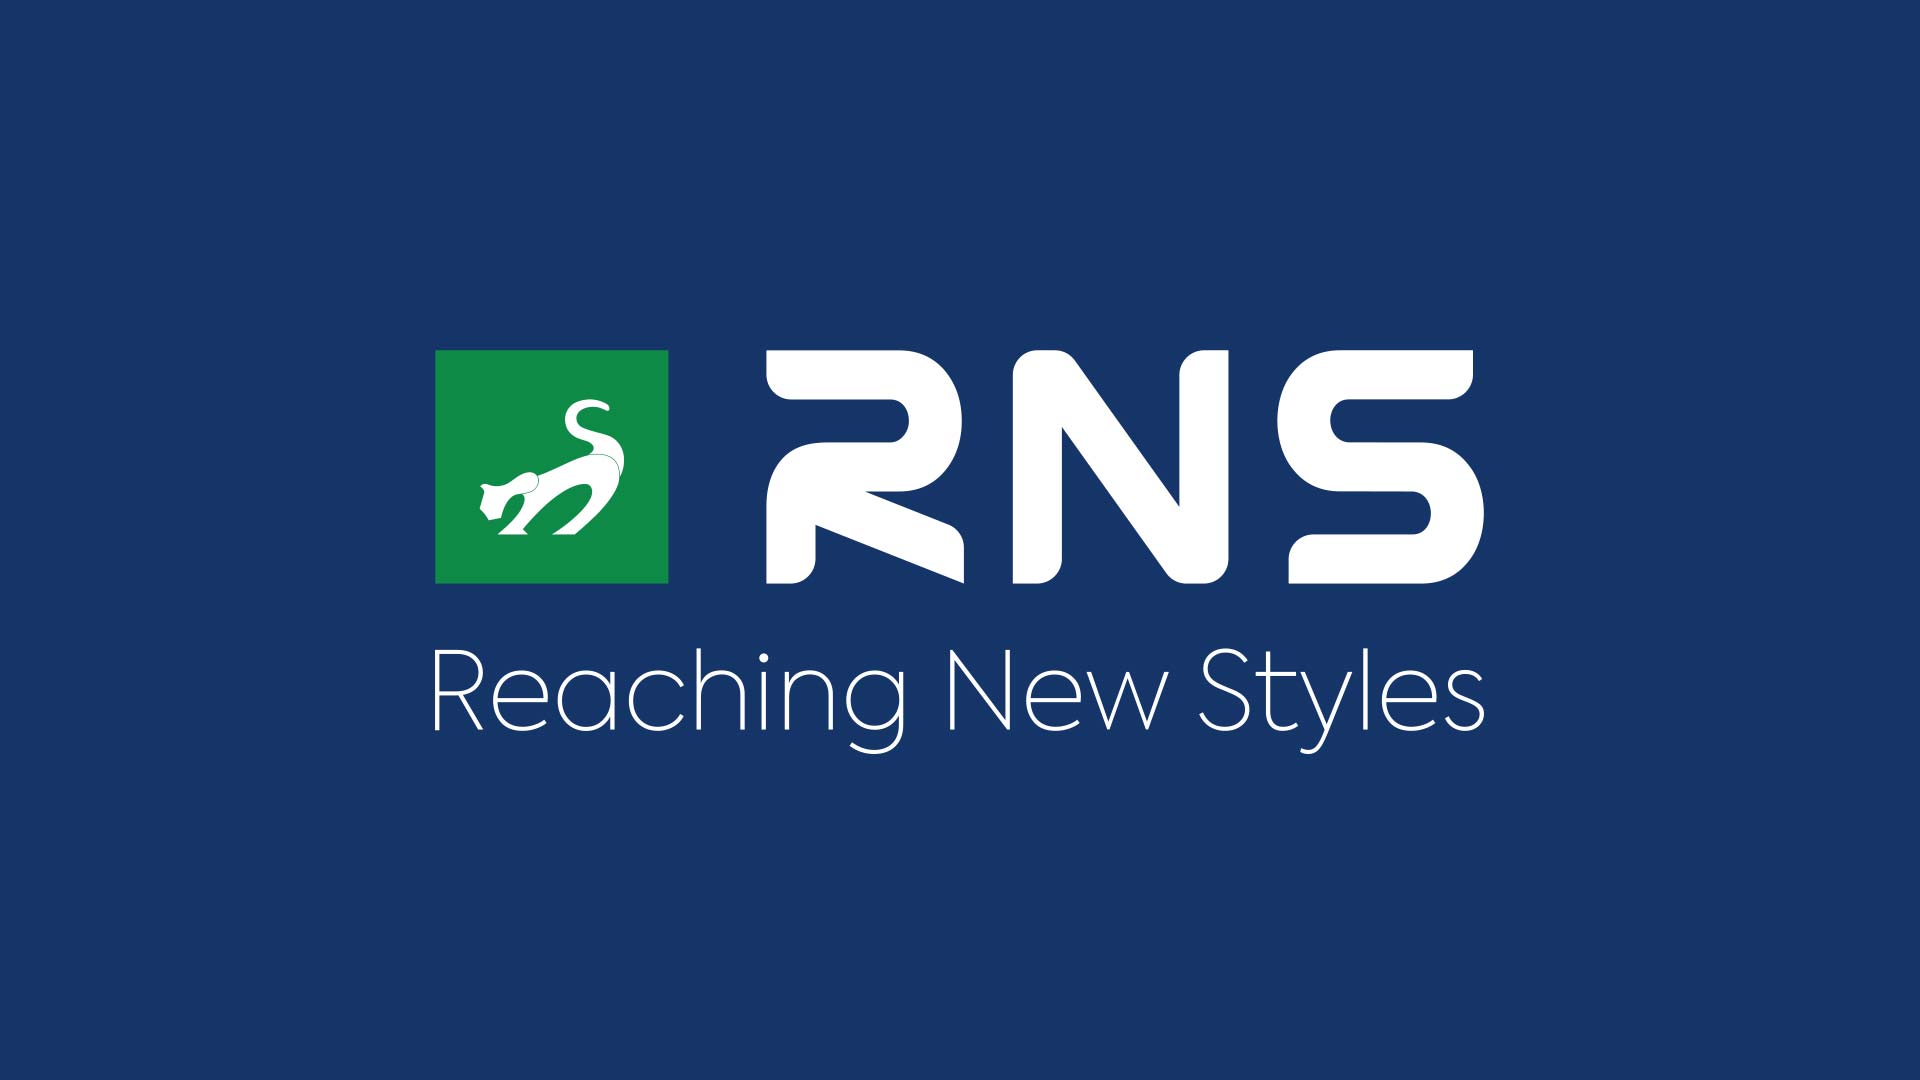 RNS Logo